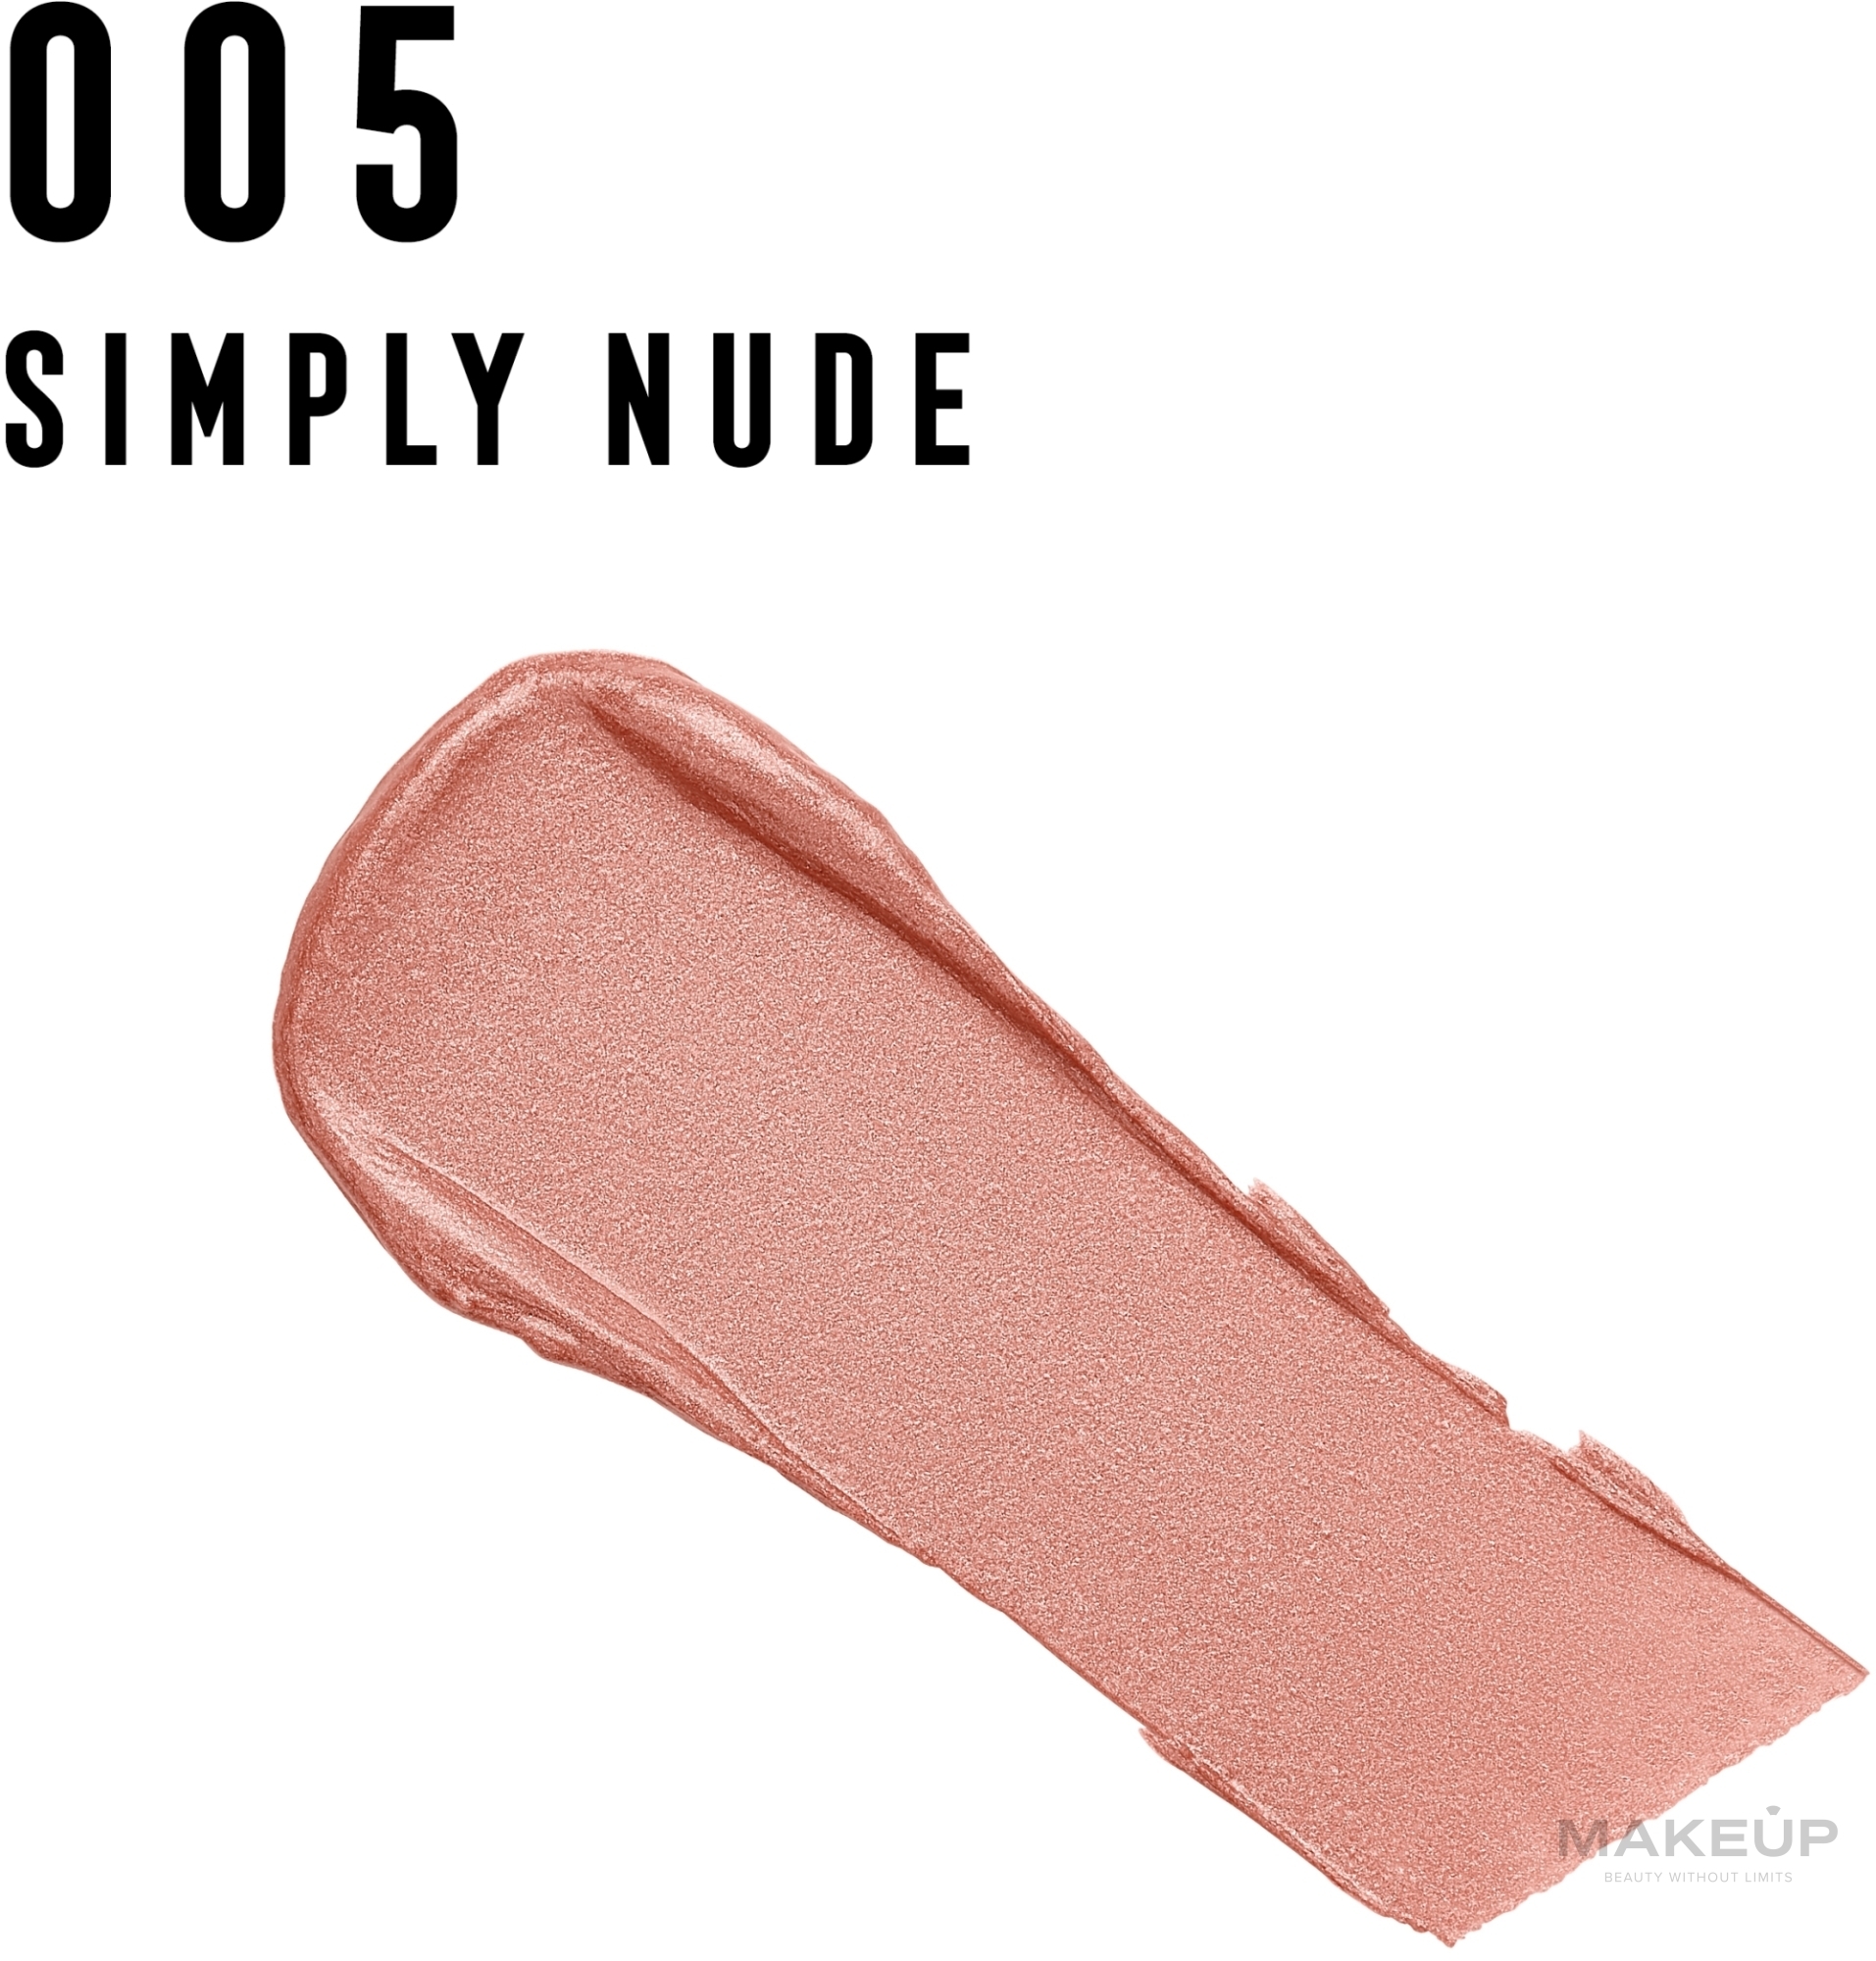 Помада для губ увлажняющая - Max Factor Colour Elixir Moisture Lipstick — фото 005 - Simp Nude